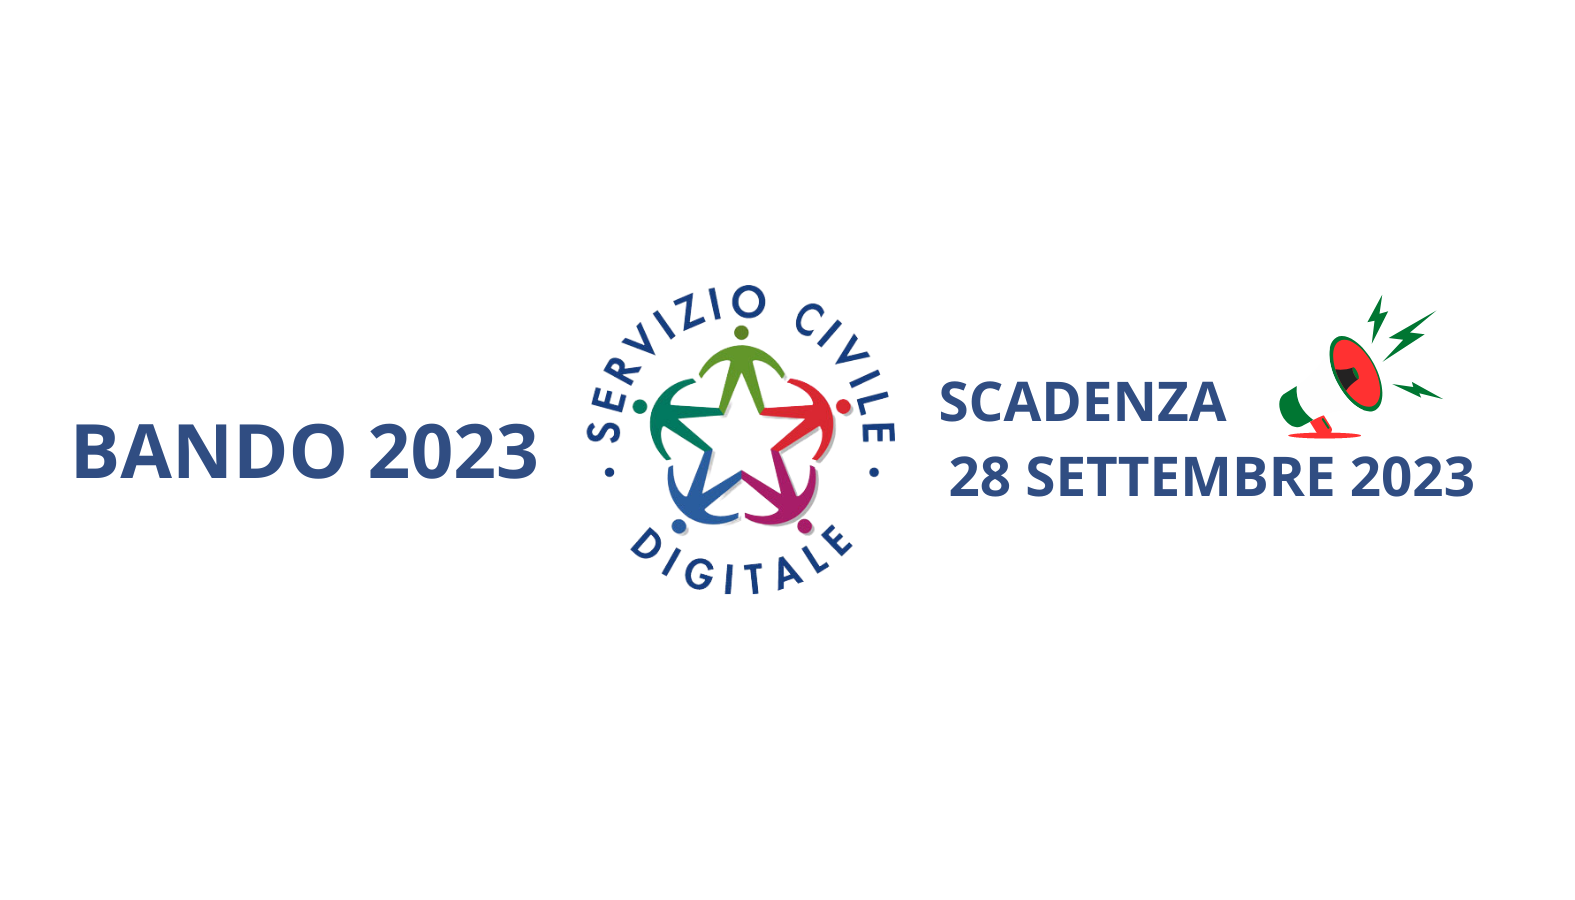 Bando Servizio Civile Digitale 2023